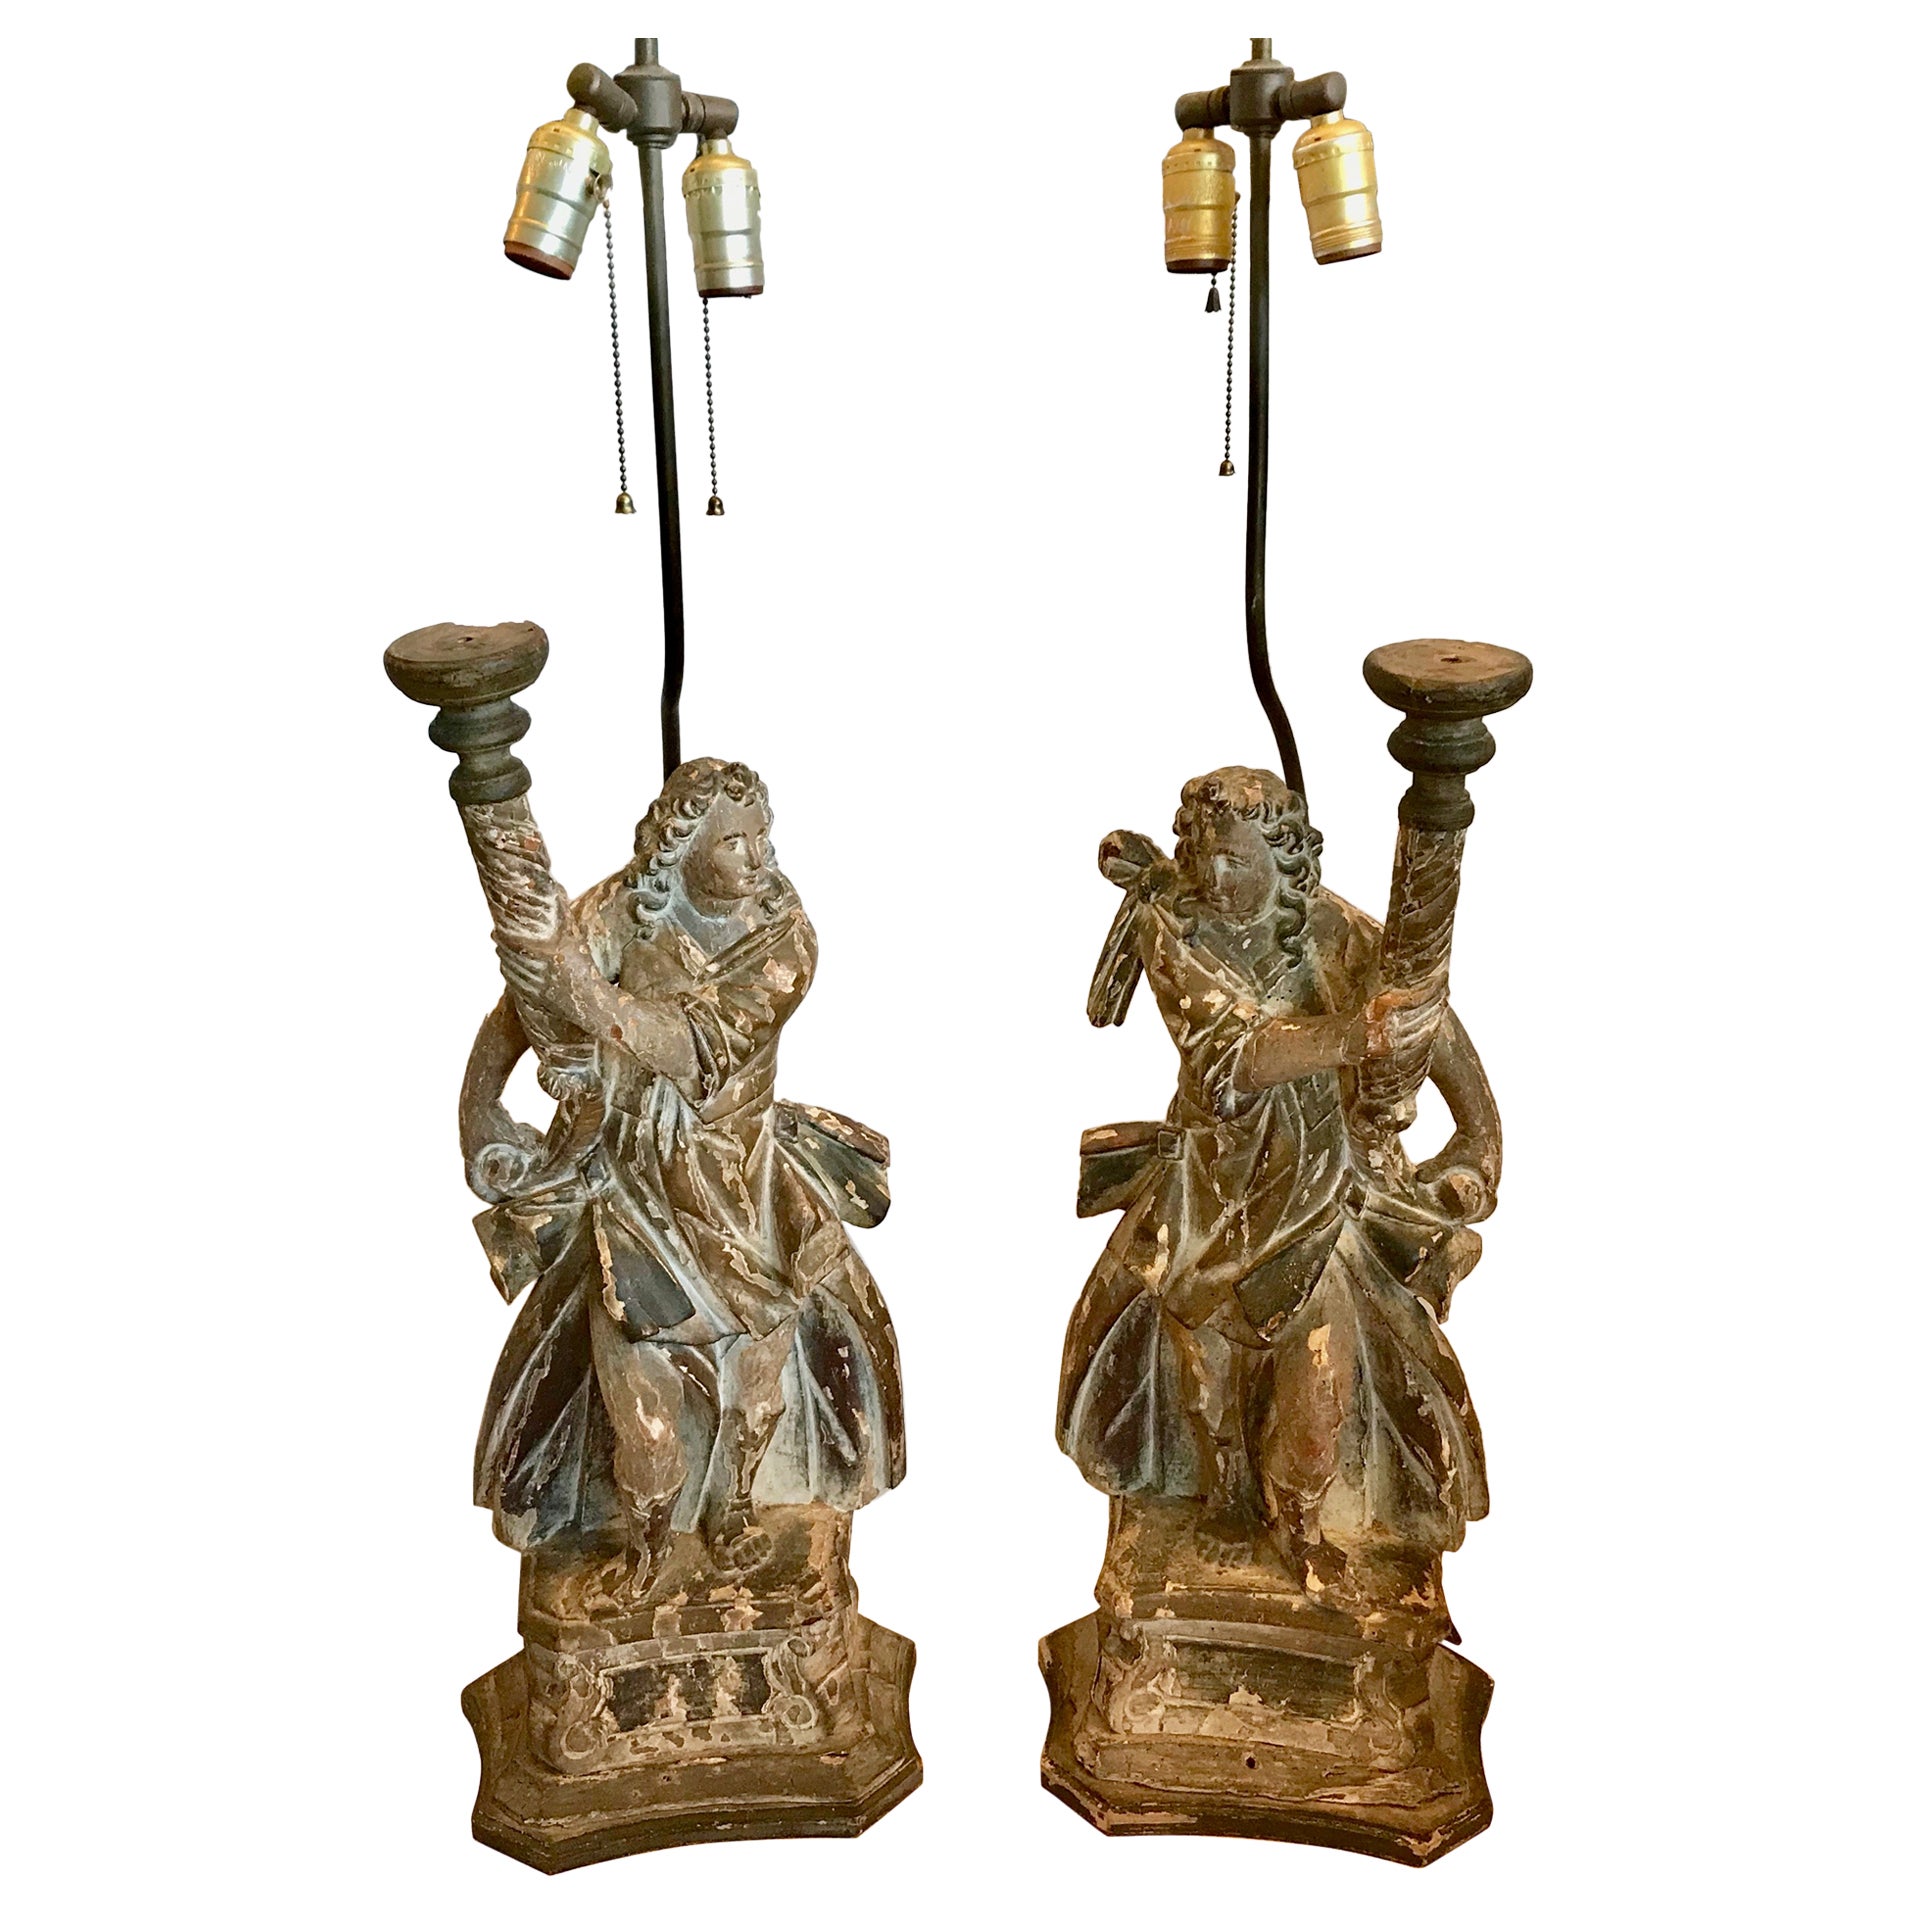 Paire de grilles figuratives italiennes du 17ème siècle, montées en lampes